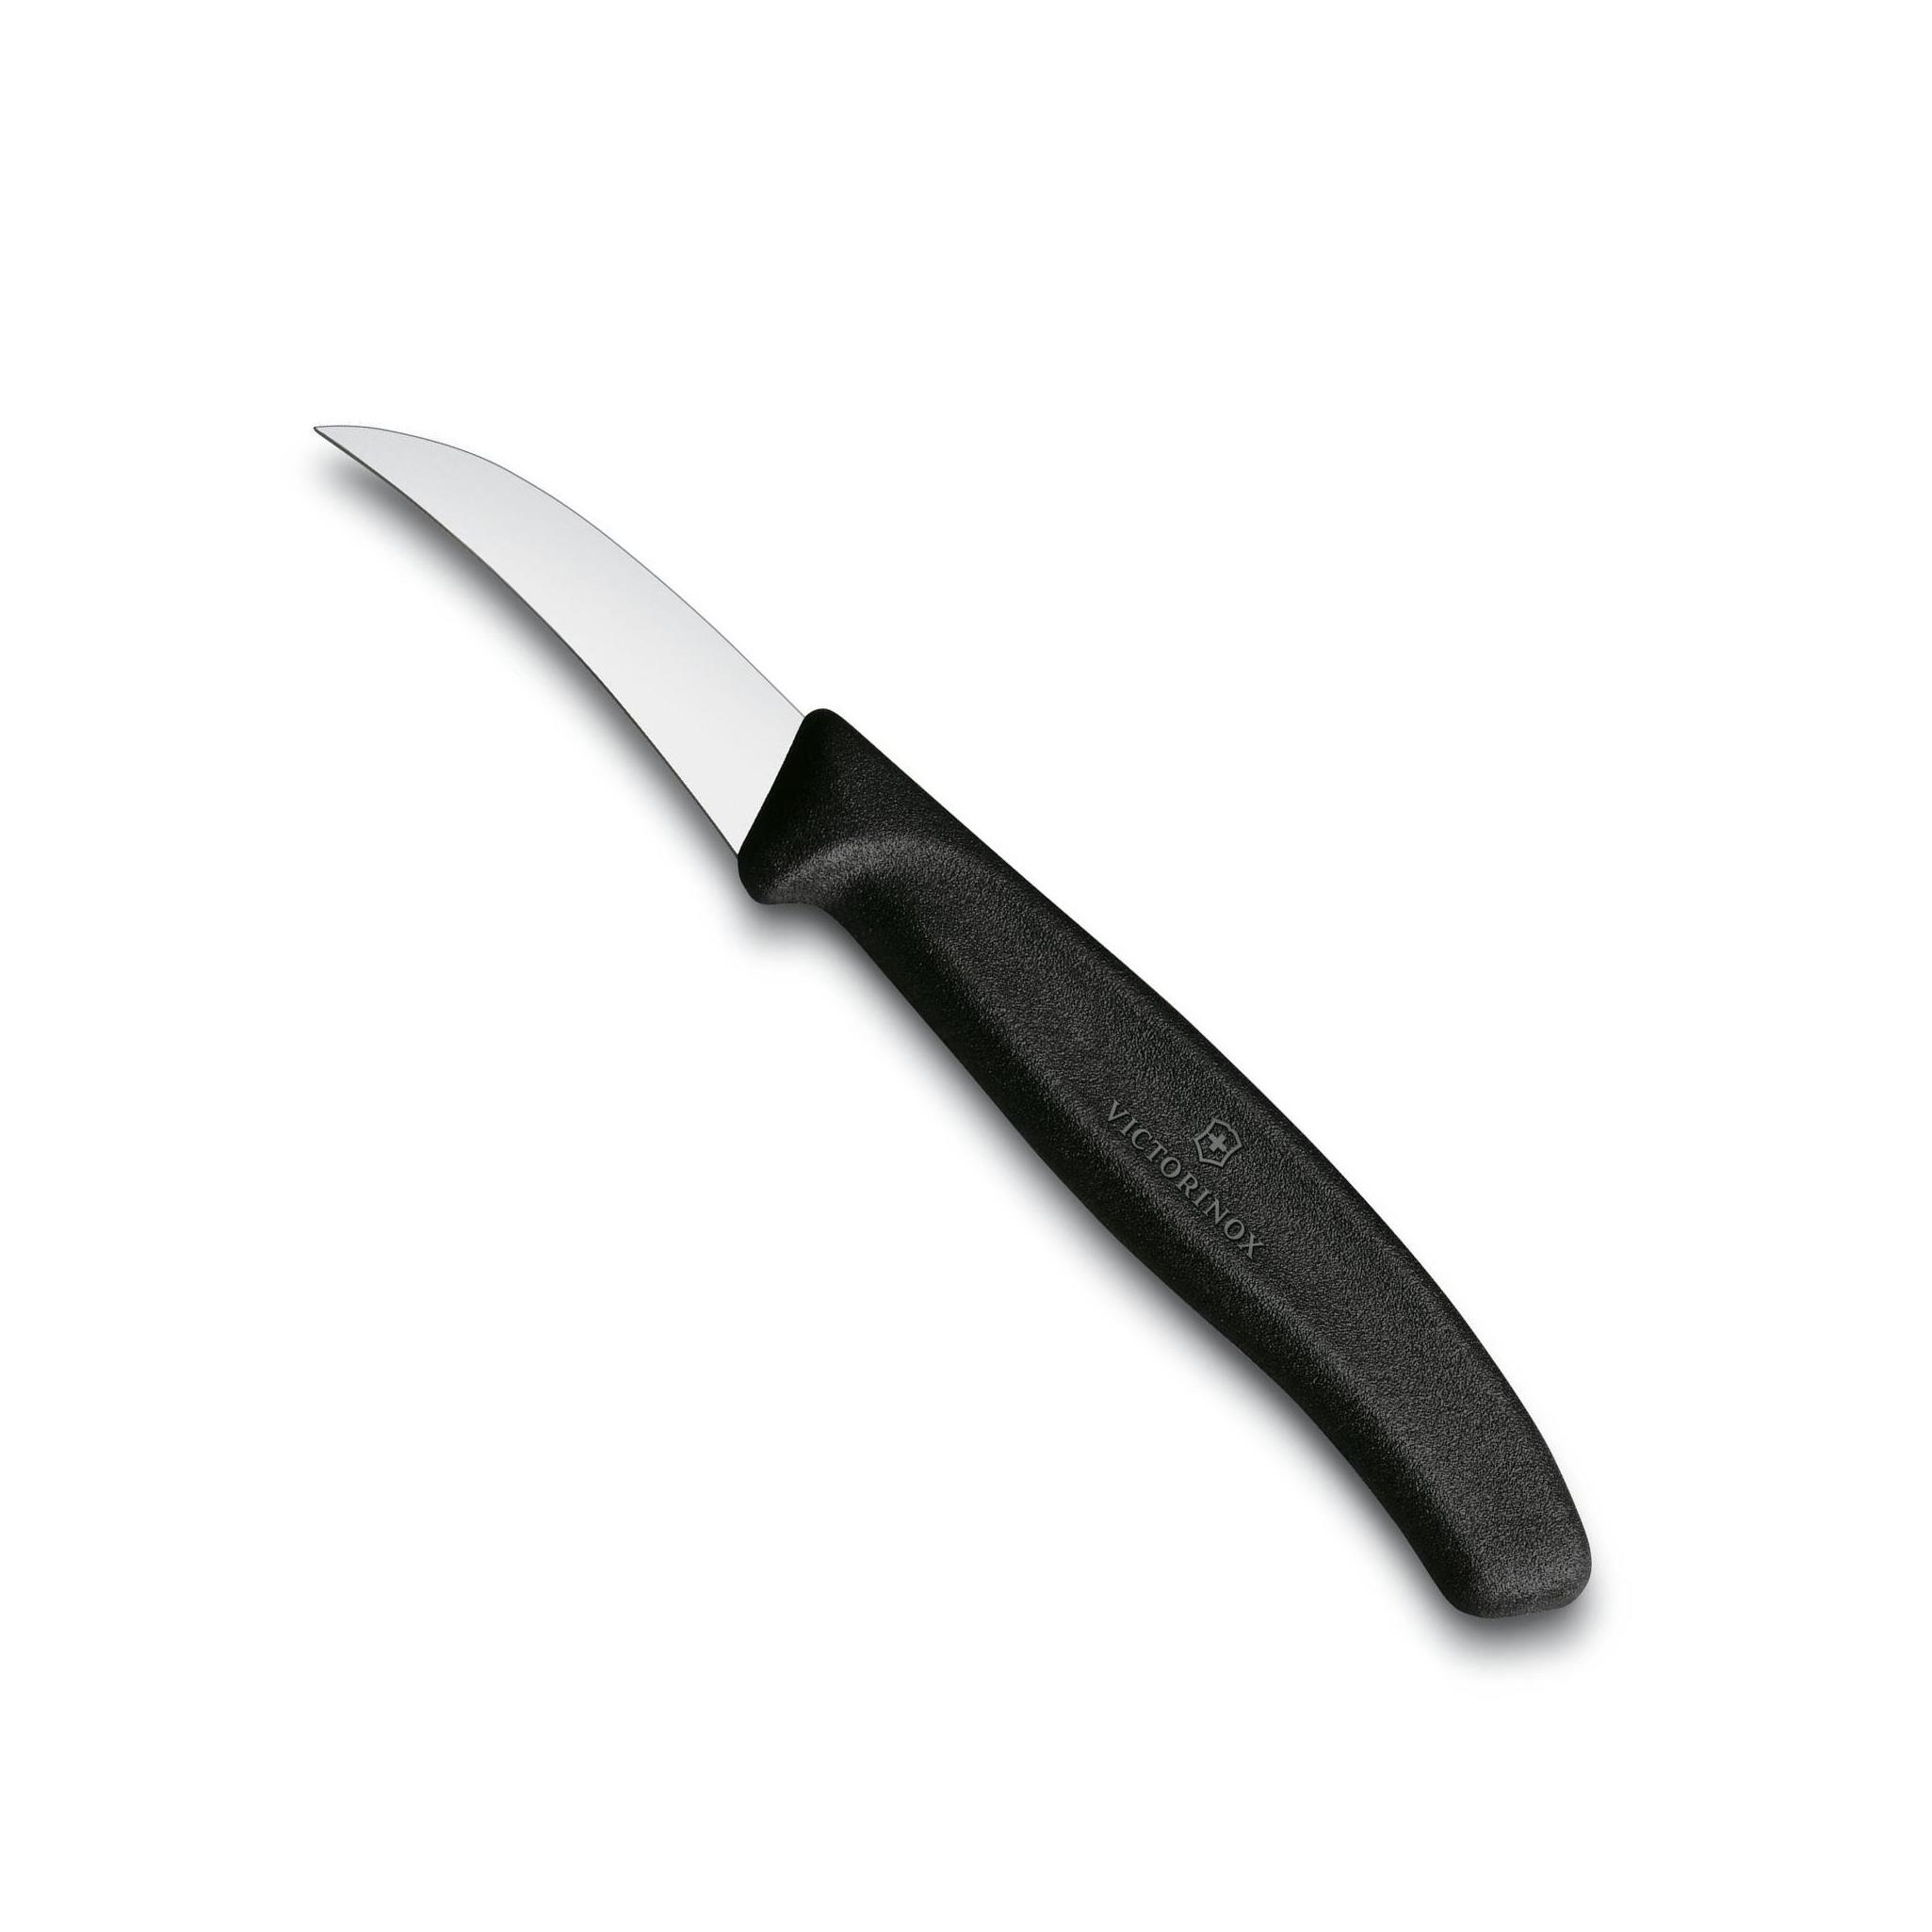 Nůž na loupání SWISS CLASSIC 6 cm černý - Victorinox